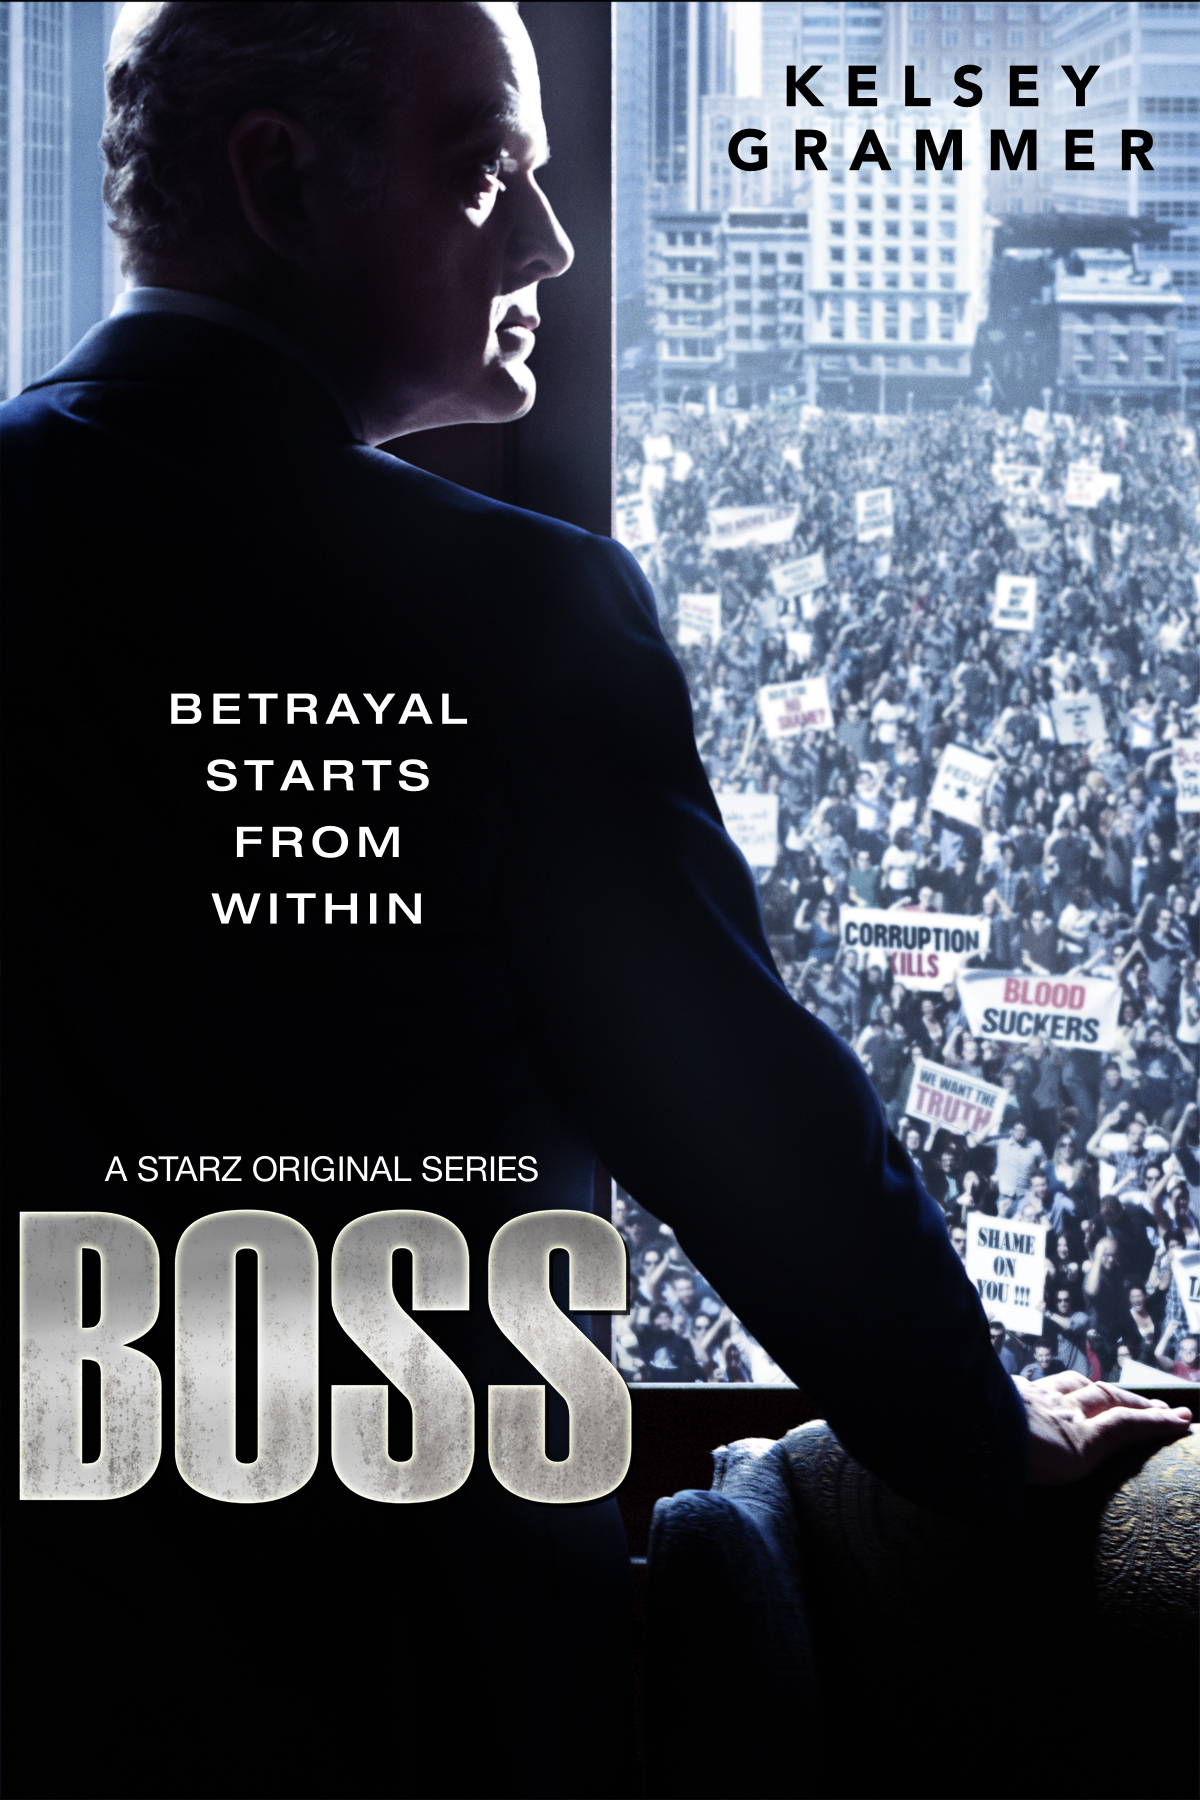 Boss S02 2012 English